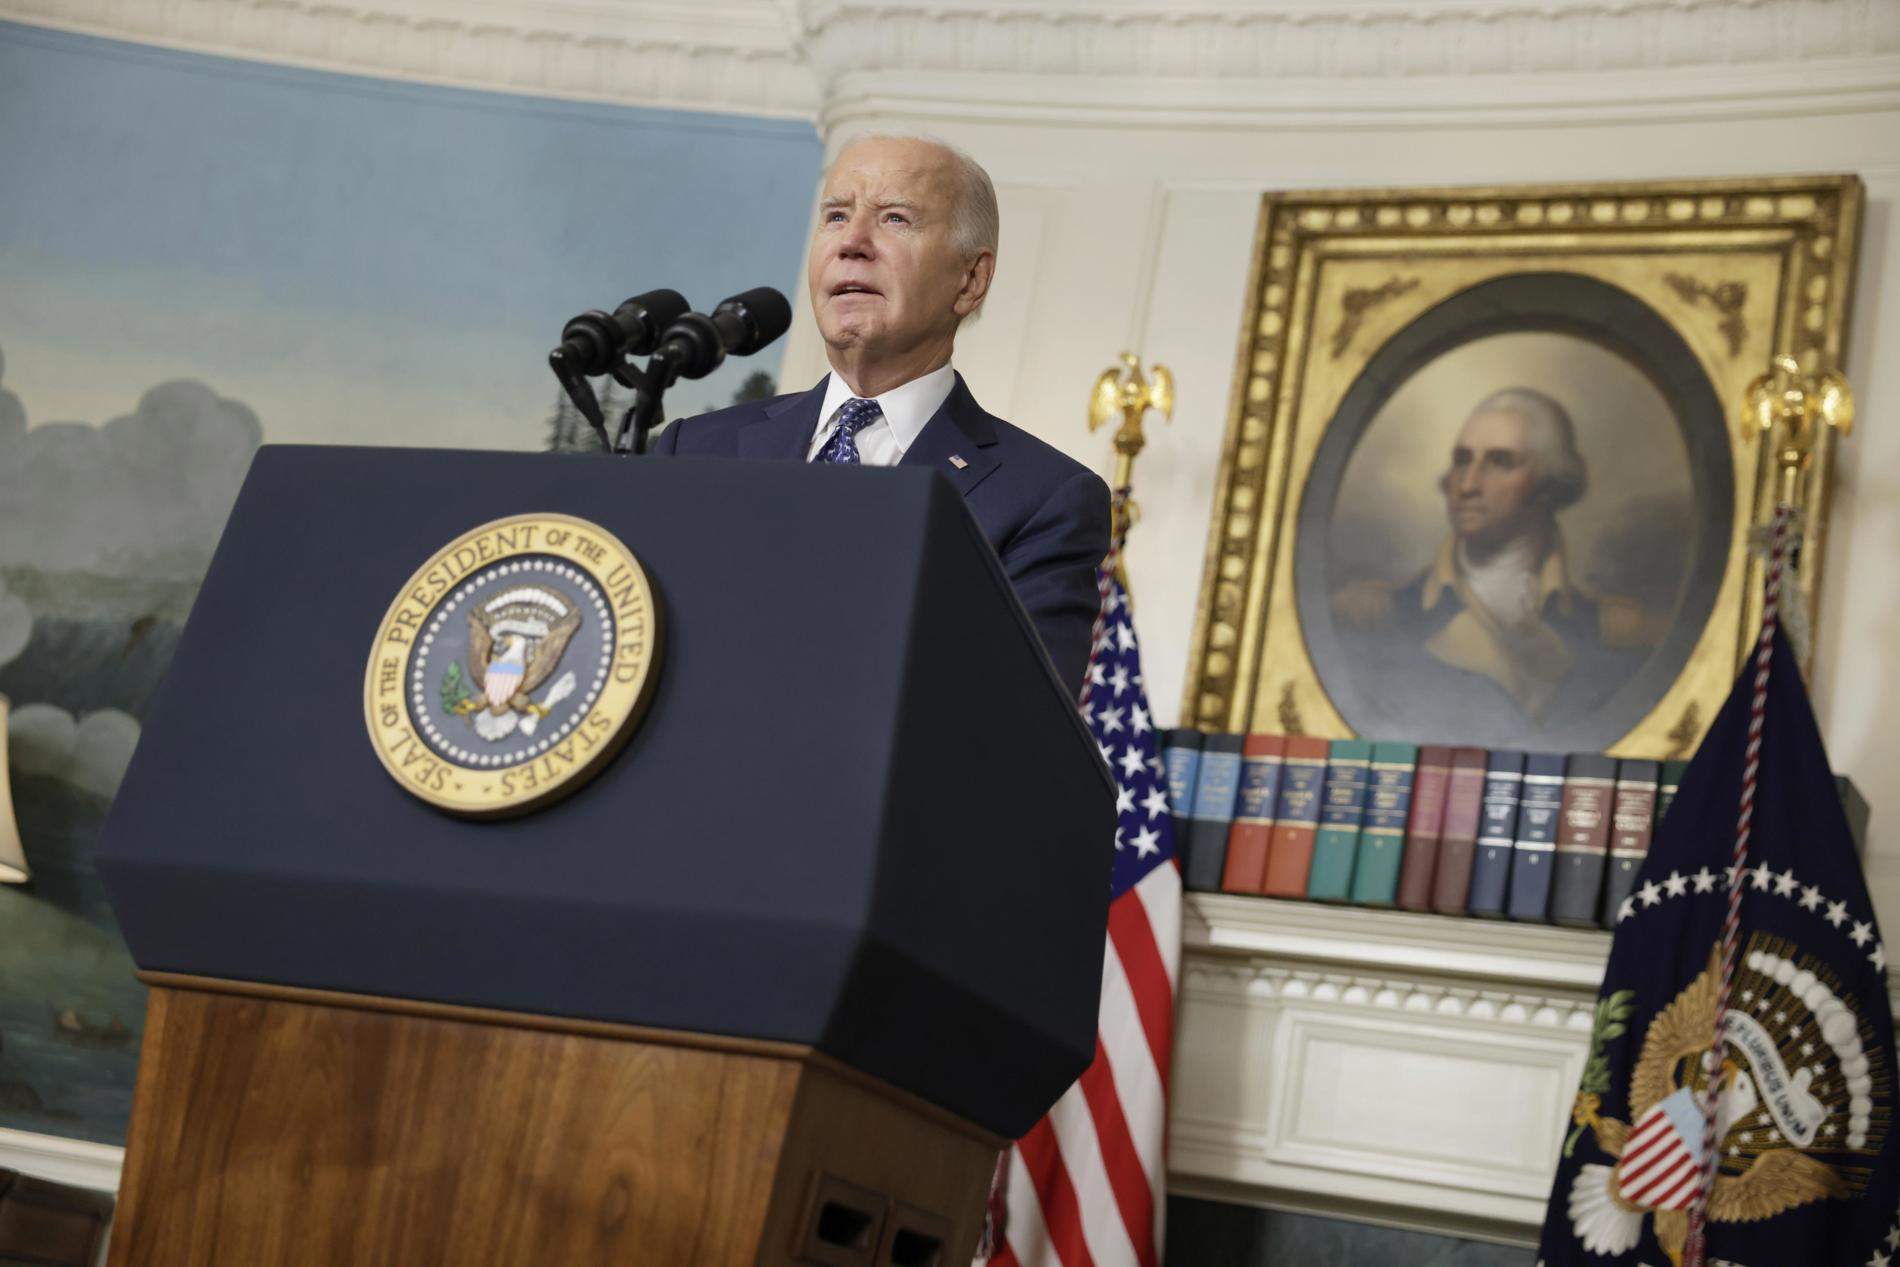 Biden respon al fiscal subratllant que la seva memòria "està bé" però torna a relliscar